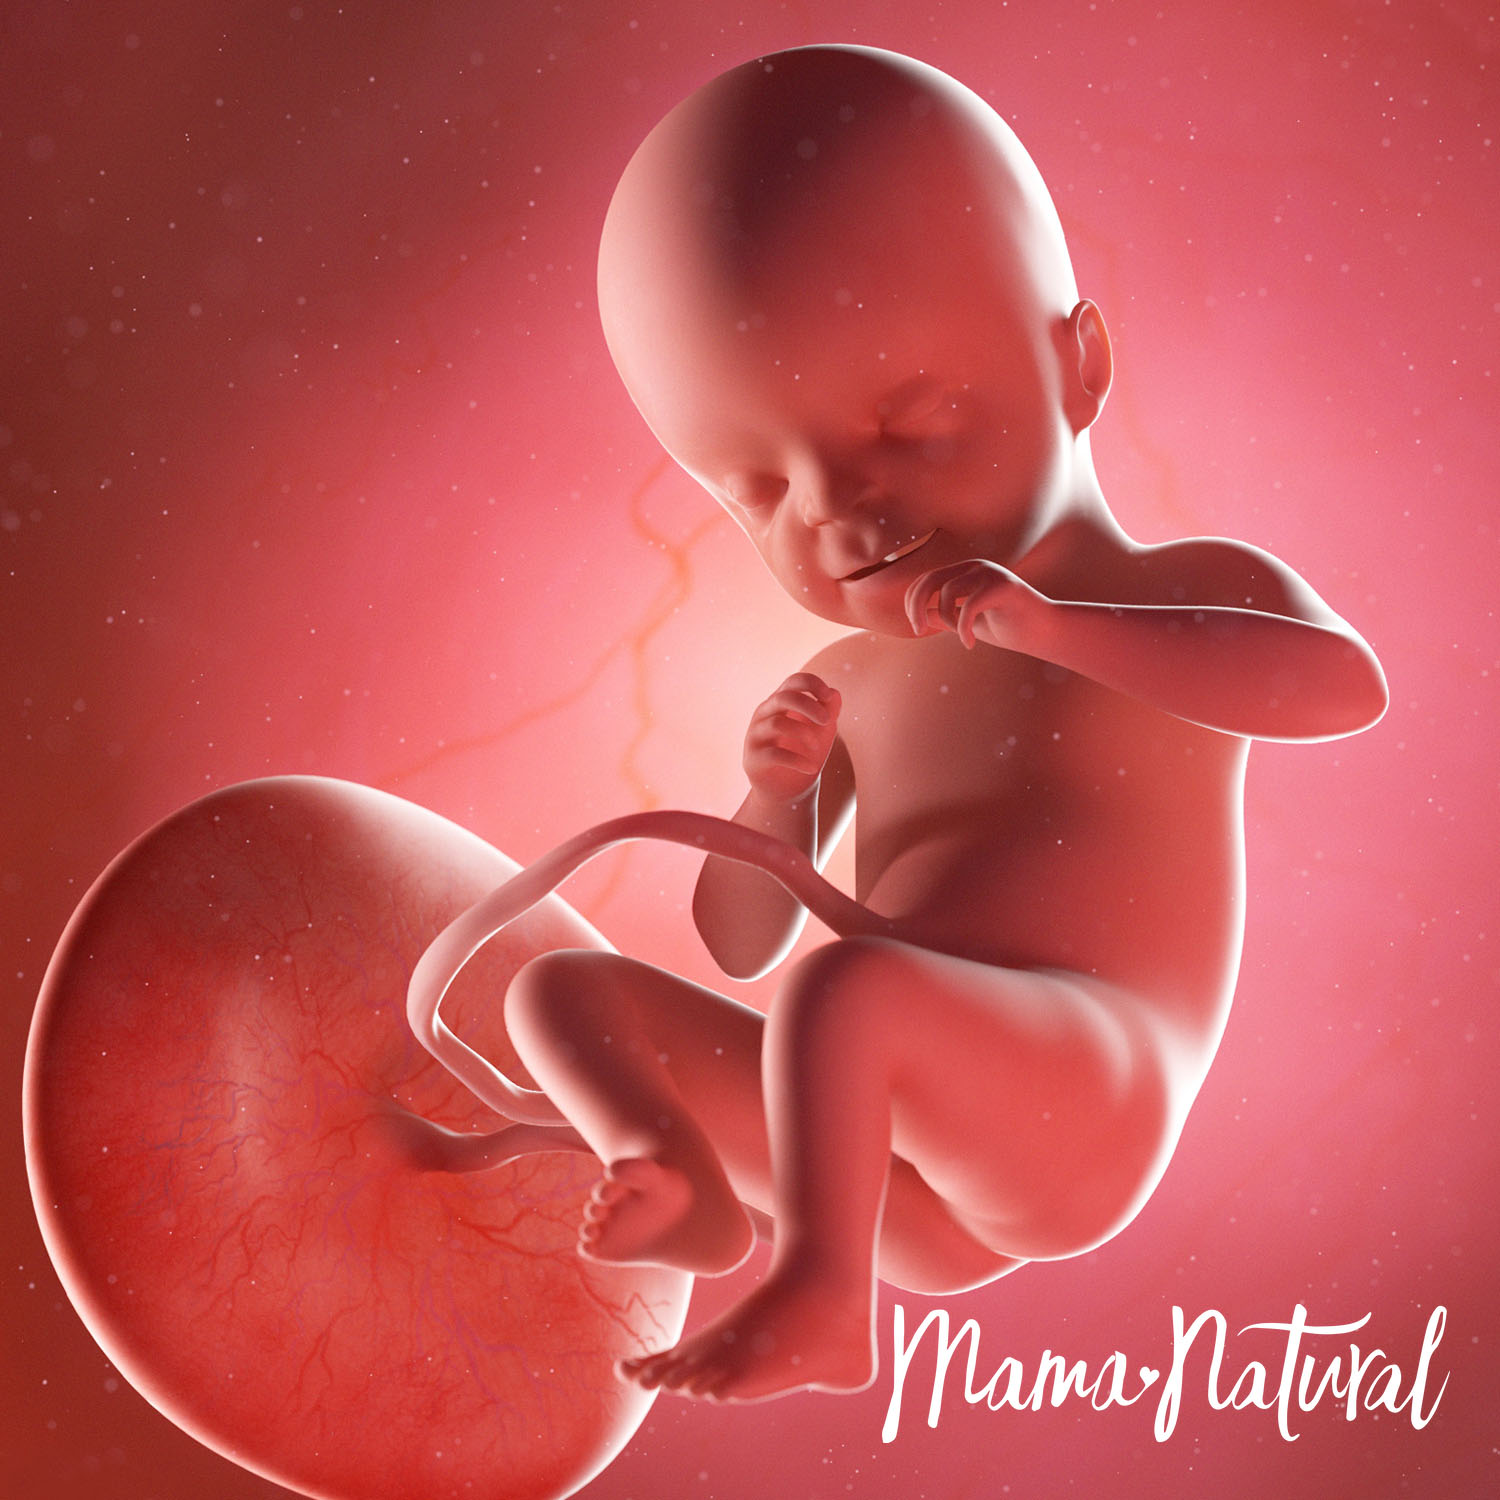 Baby at 21 Weeks Pregnant - Pregnancy Week By Week by Mama Natural